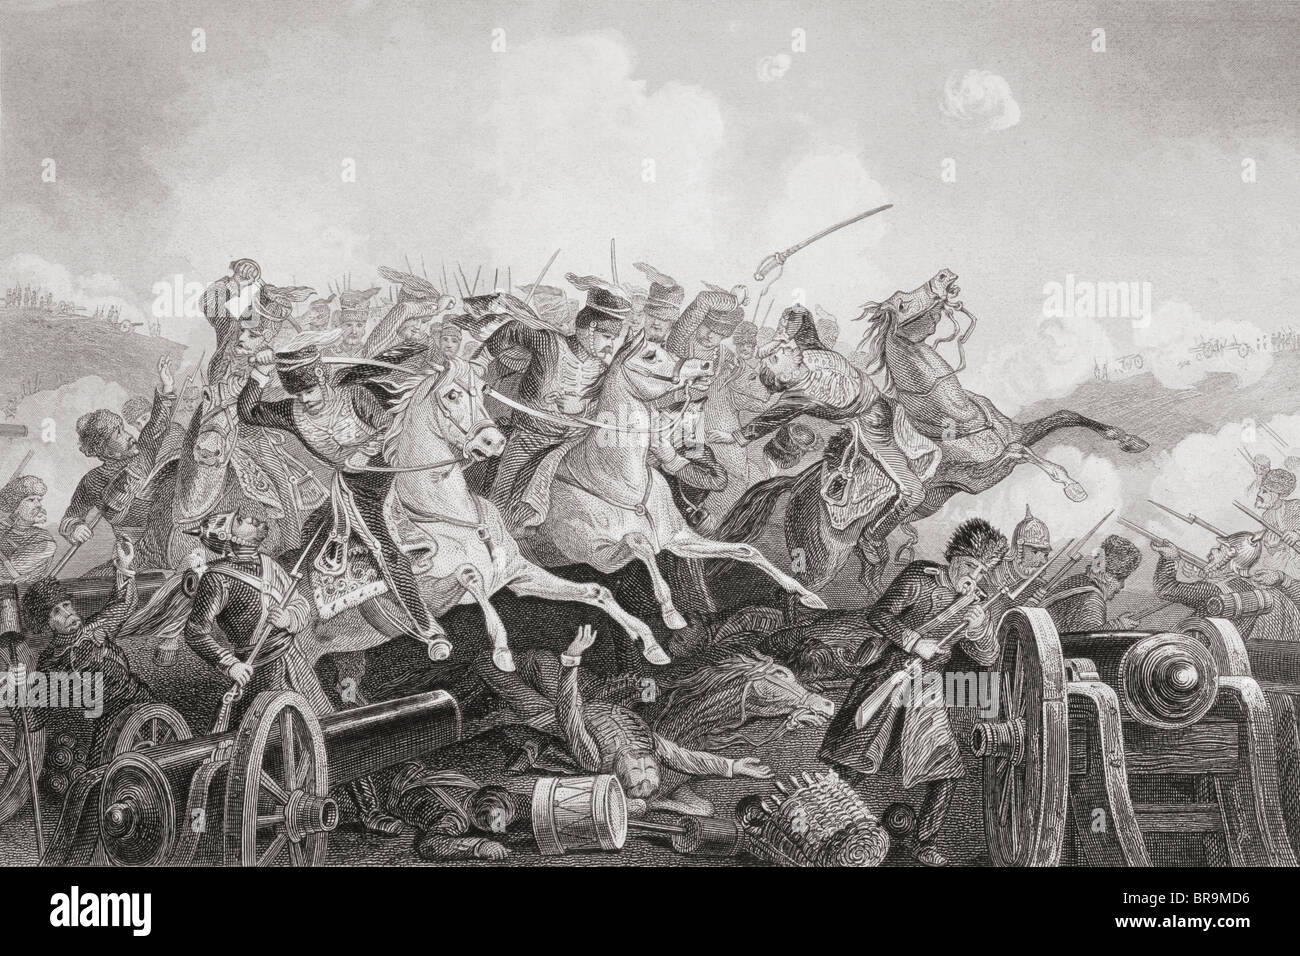 Die Schlacht von Balaklava Haro Prii, Krim, 25. Oktober 1854.  Charge of the Light Brigade. Stockfoto